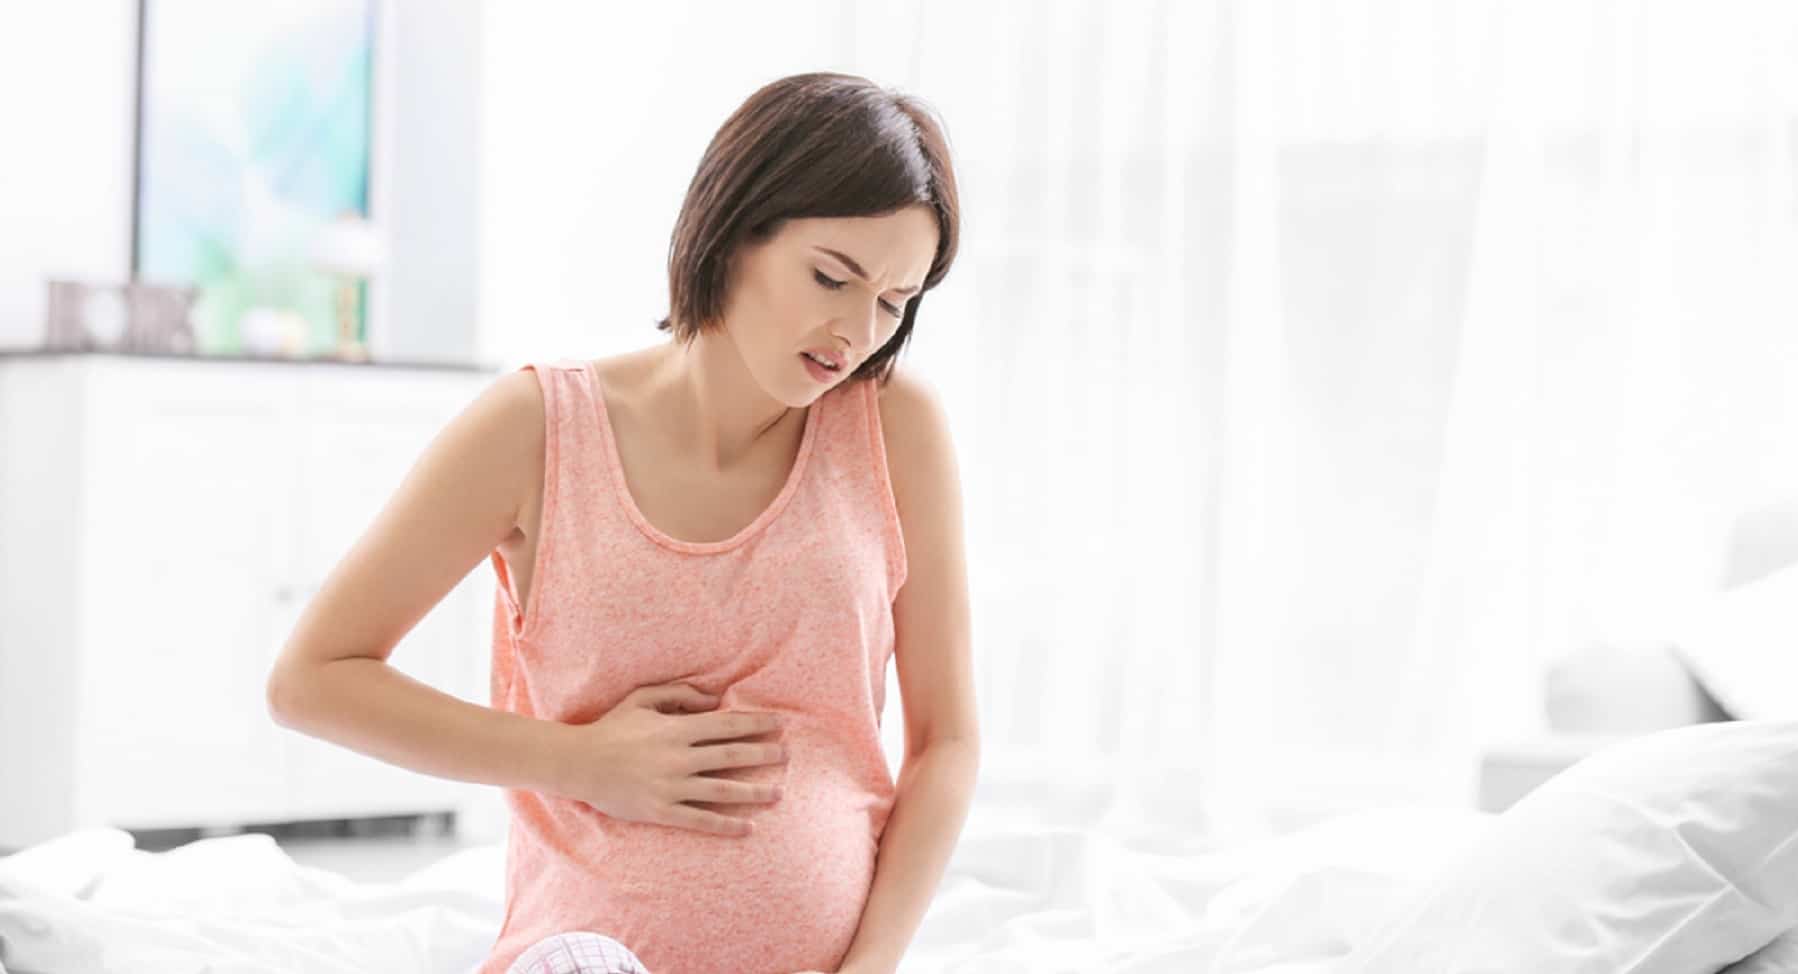 آلام في المعدة أثناء الحمل؟ يمكن أن تكون علامة على الخطر ، كما تعلم ، دعنا نتعرف على الأعراض